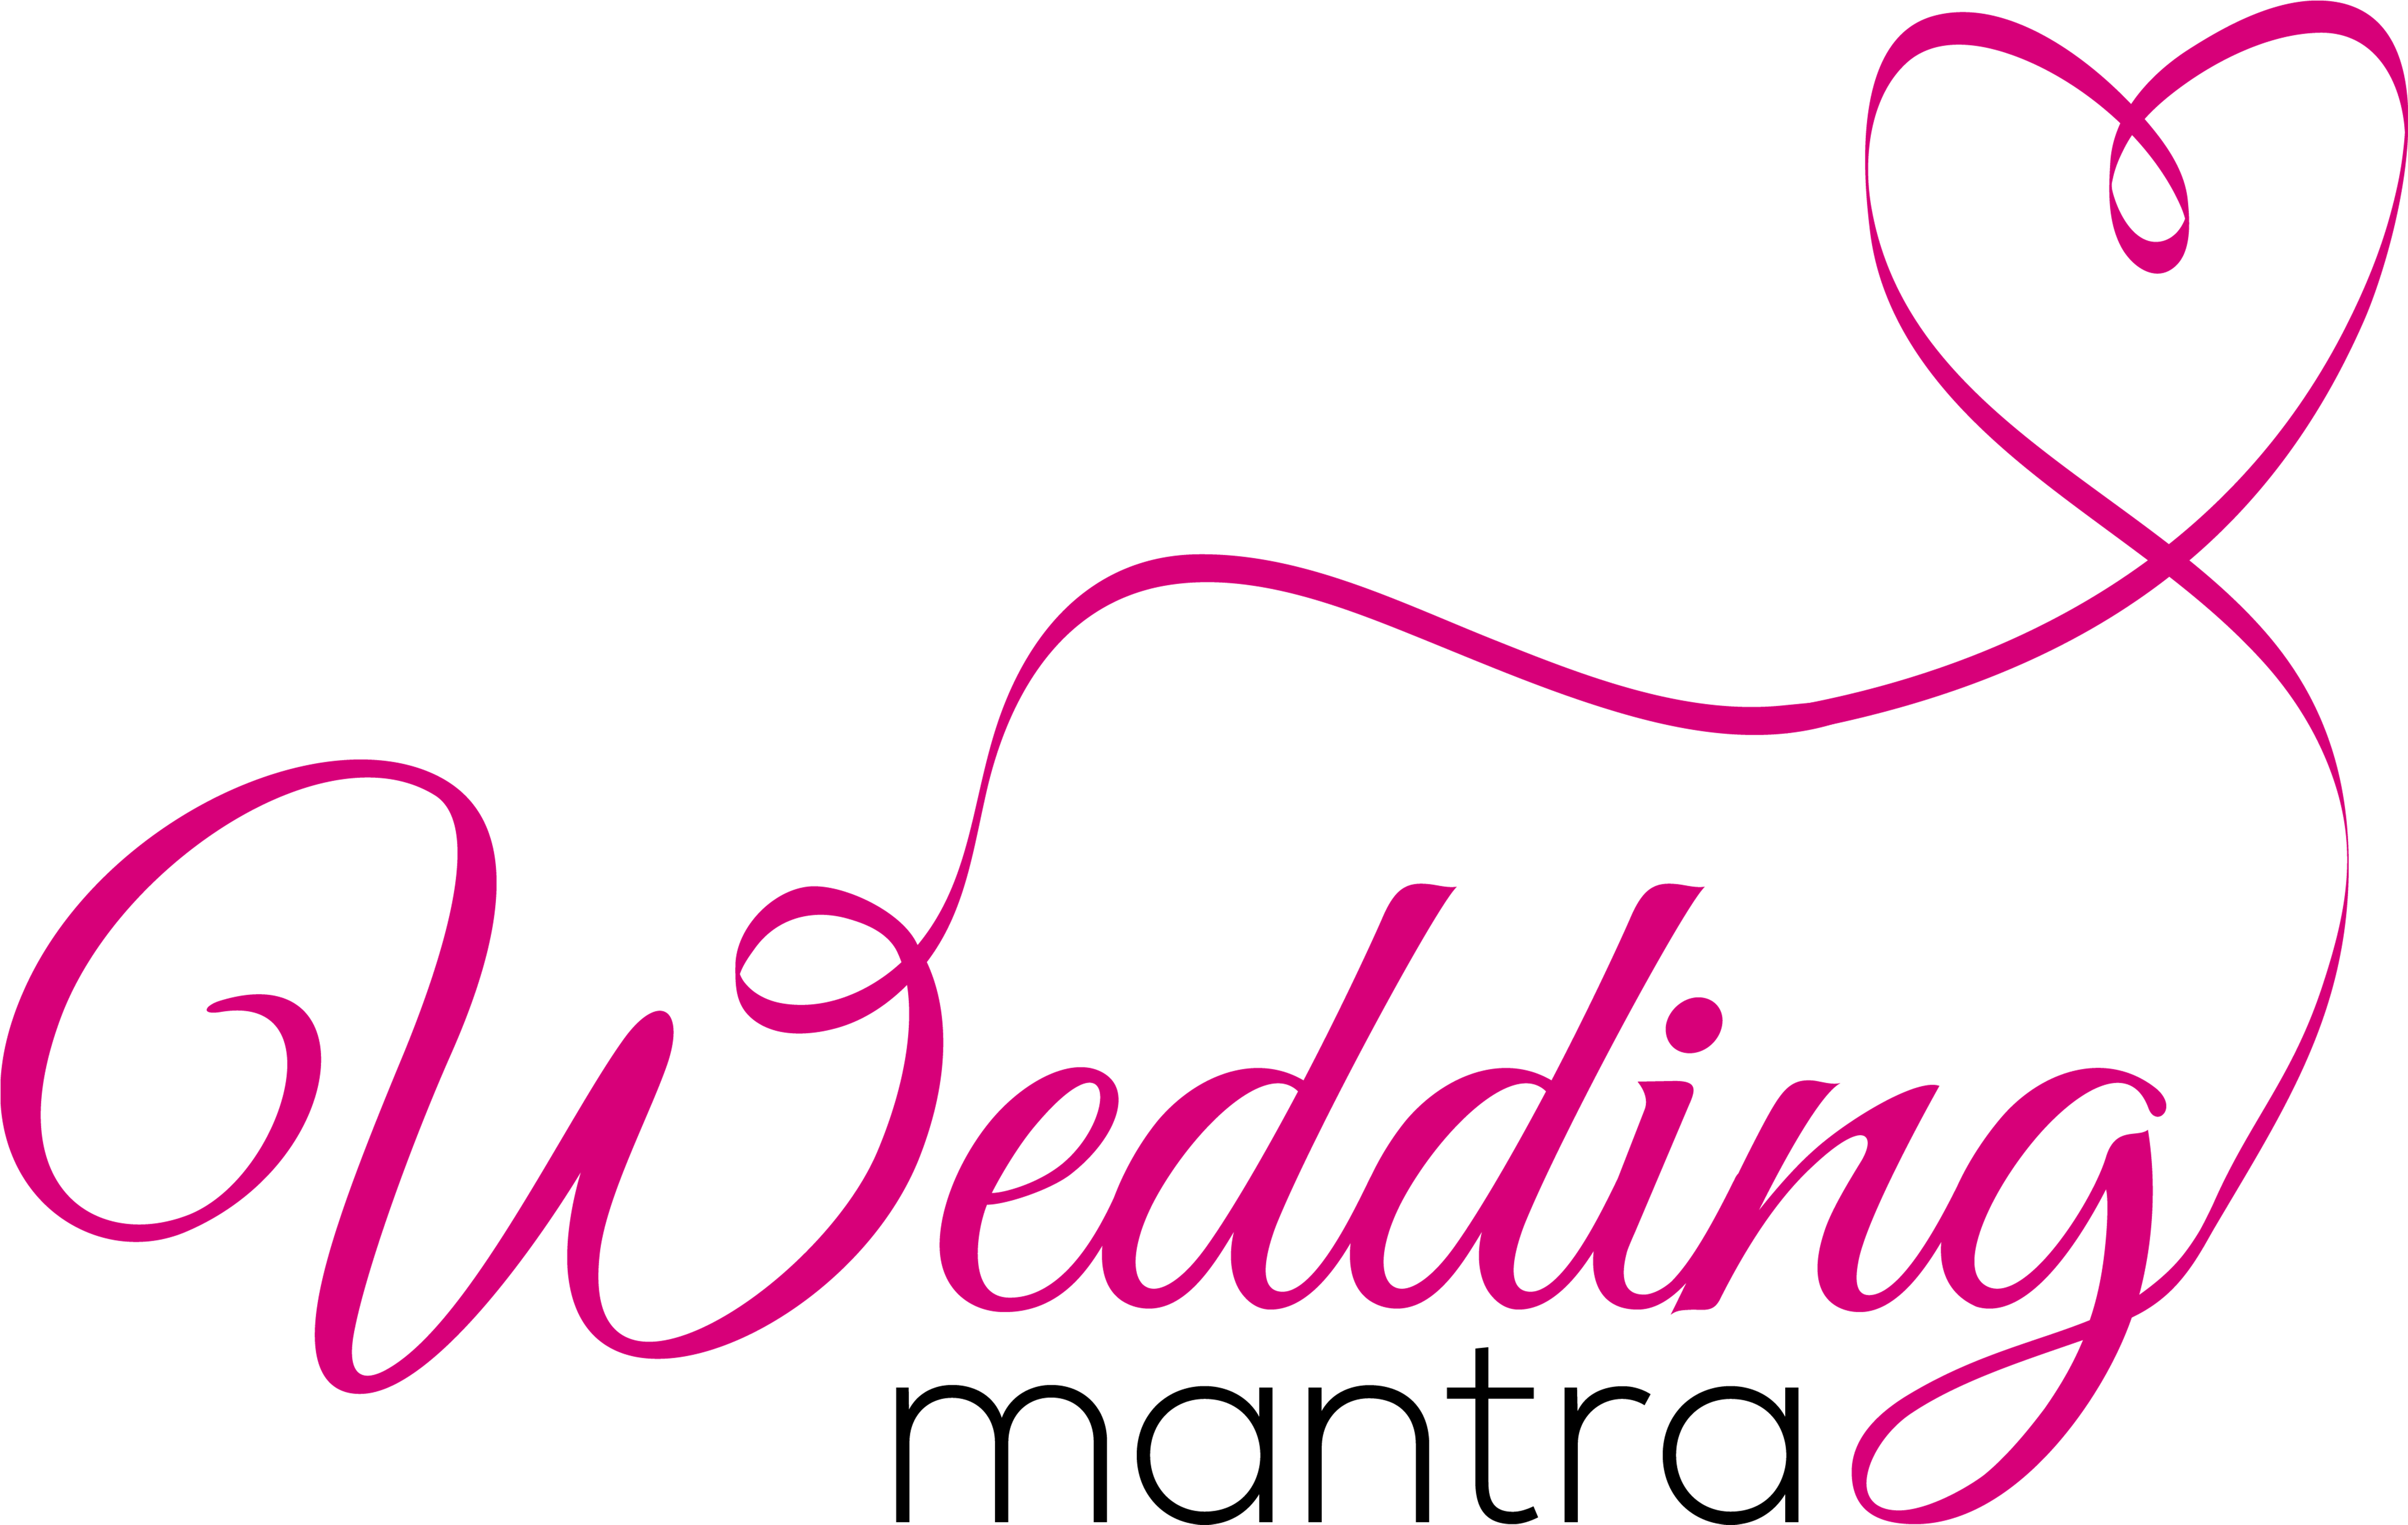 wedding invitation, alphabet, wedding png photo background